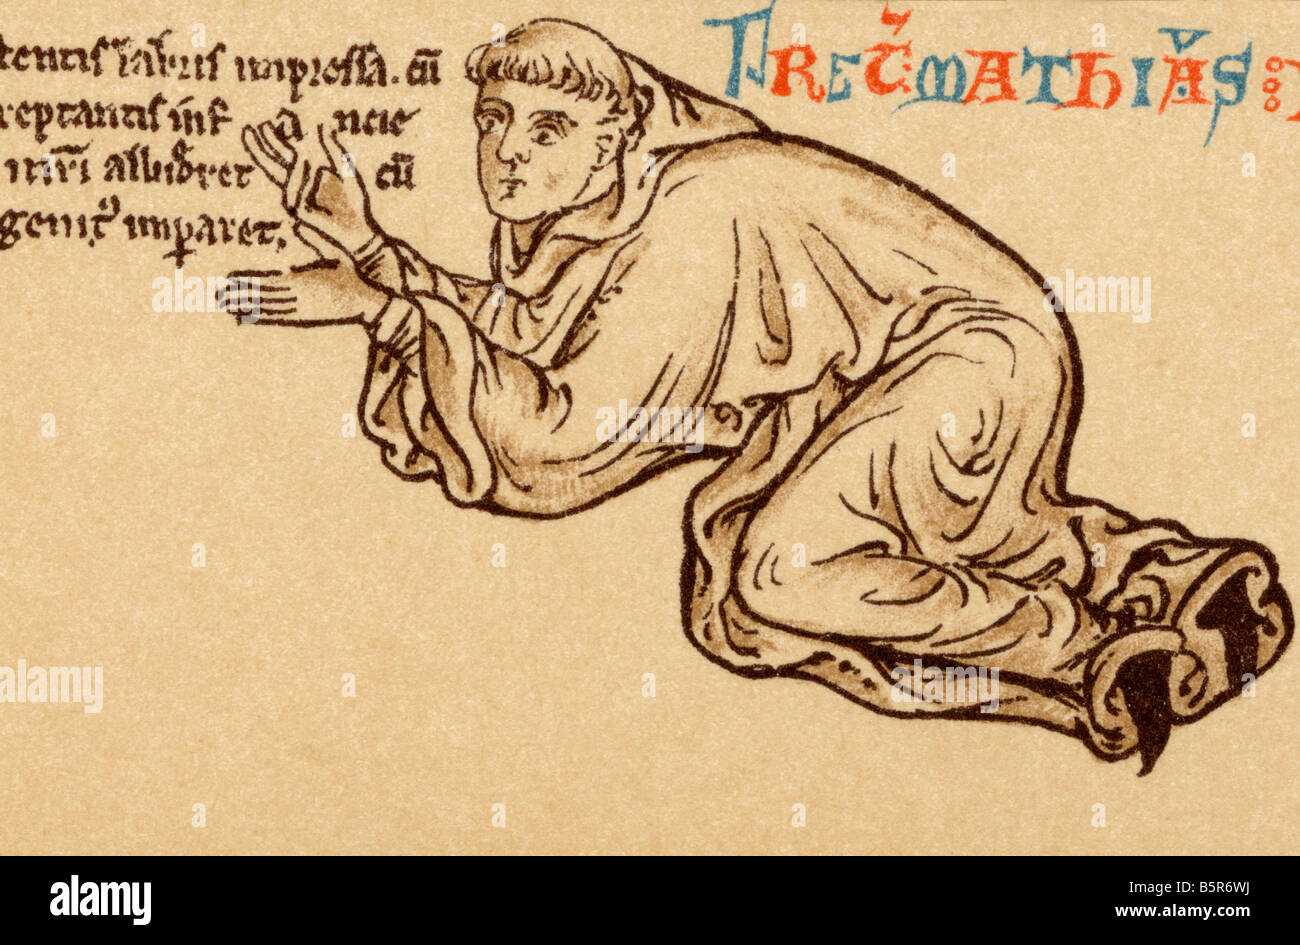 Matthew Paris, ca. 1200 - 1259. Englischer Benediktinermönch, Chronist und Künstler von illuminierten Handschriften. Selbstporträt. Stockfoto